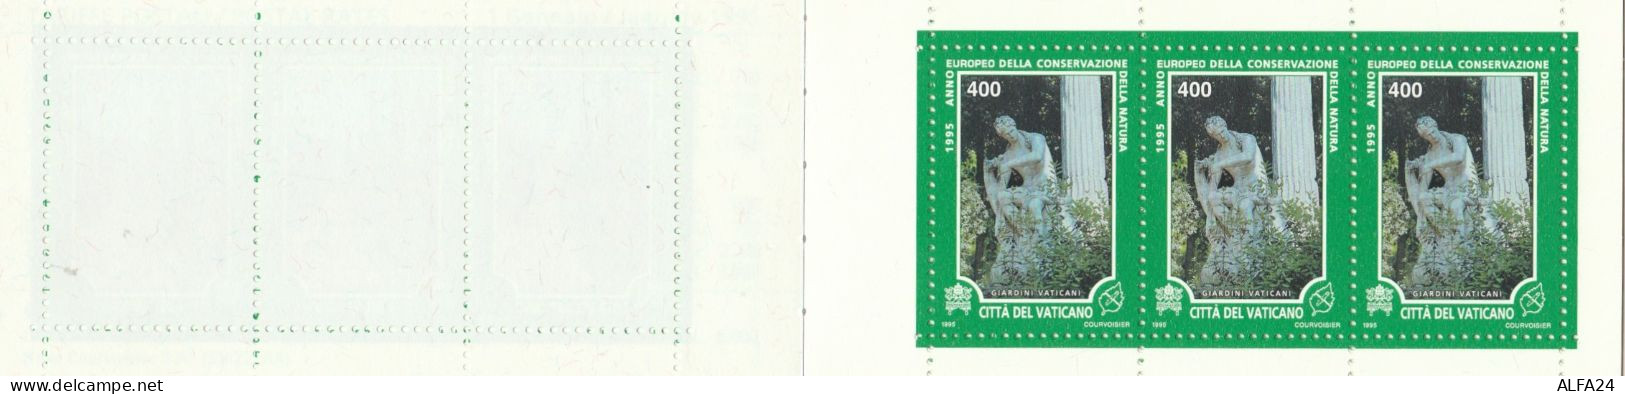 LIBRETTO VATICANO 1995 NUOVO (RY1944 - Postzegelboekjes